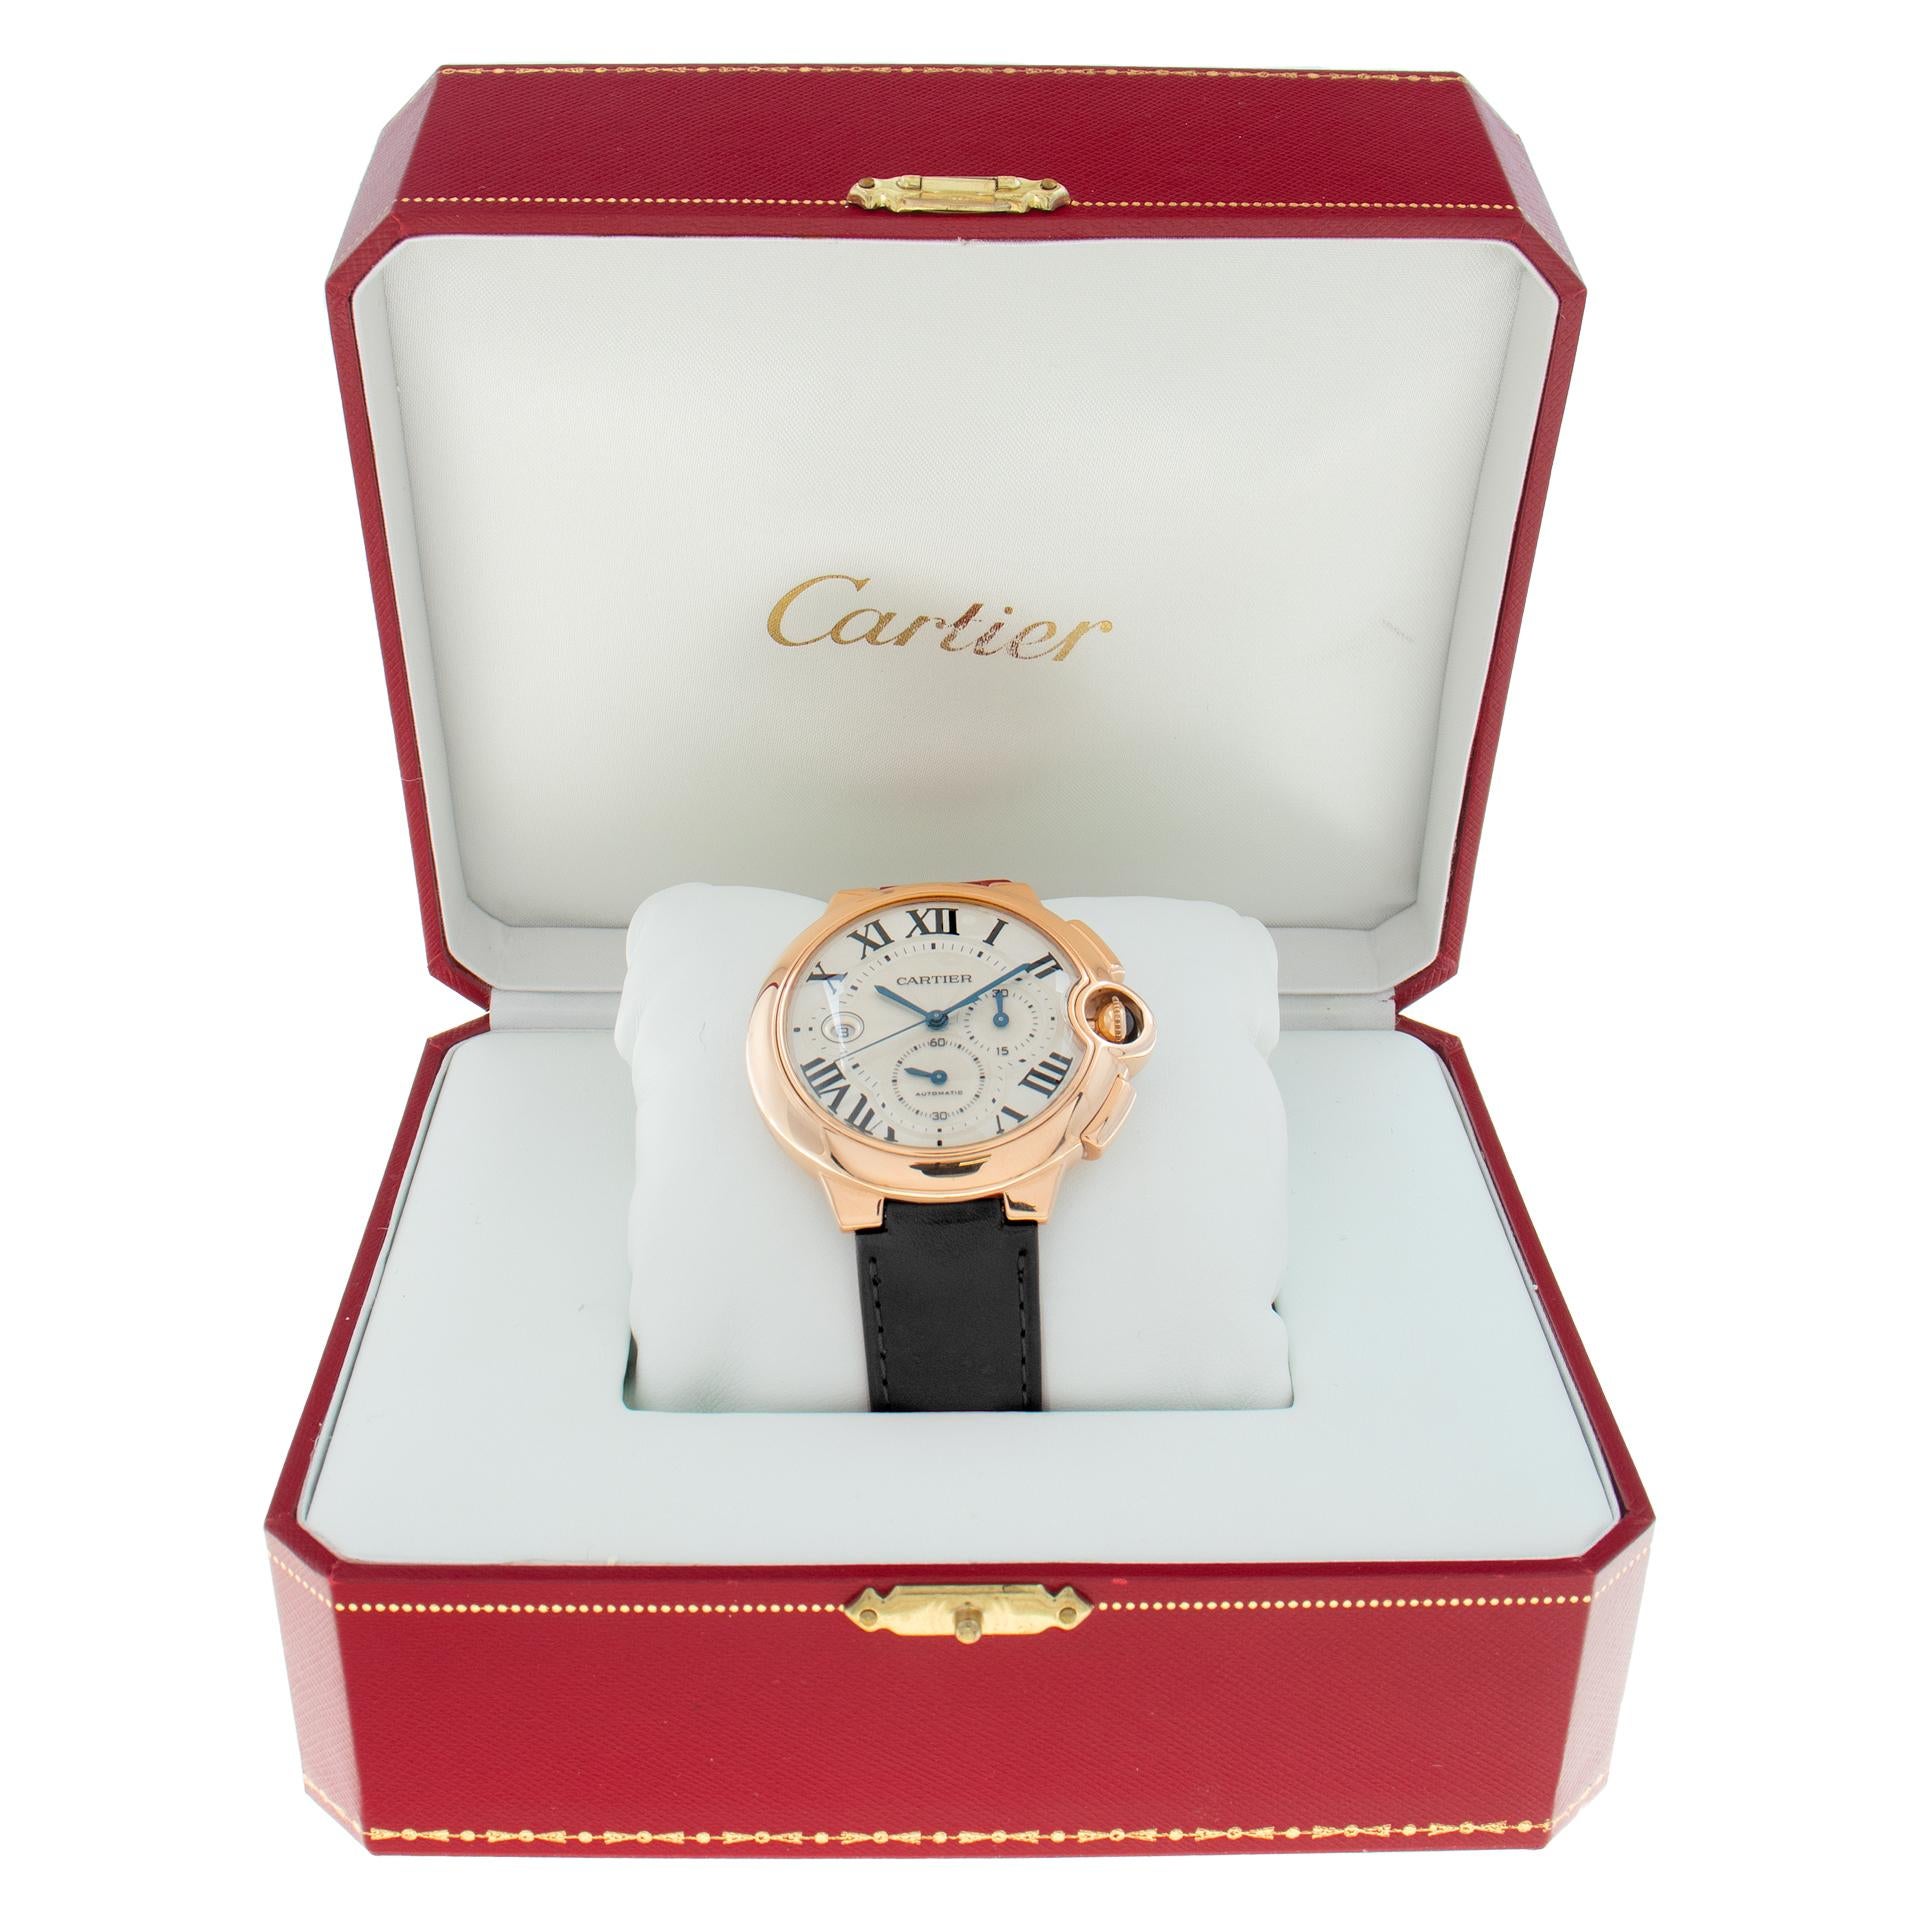 Cartier Ballon Bleu 18k rose gold Automatic Wristwatch Ref W6920009 1